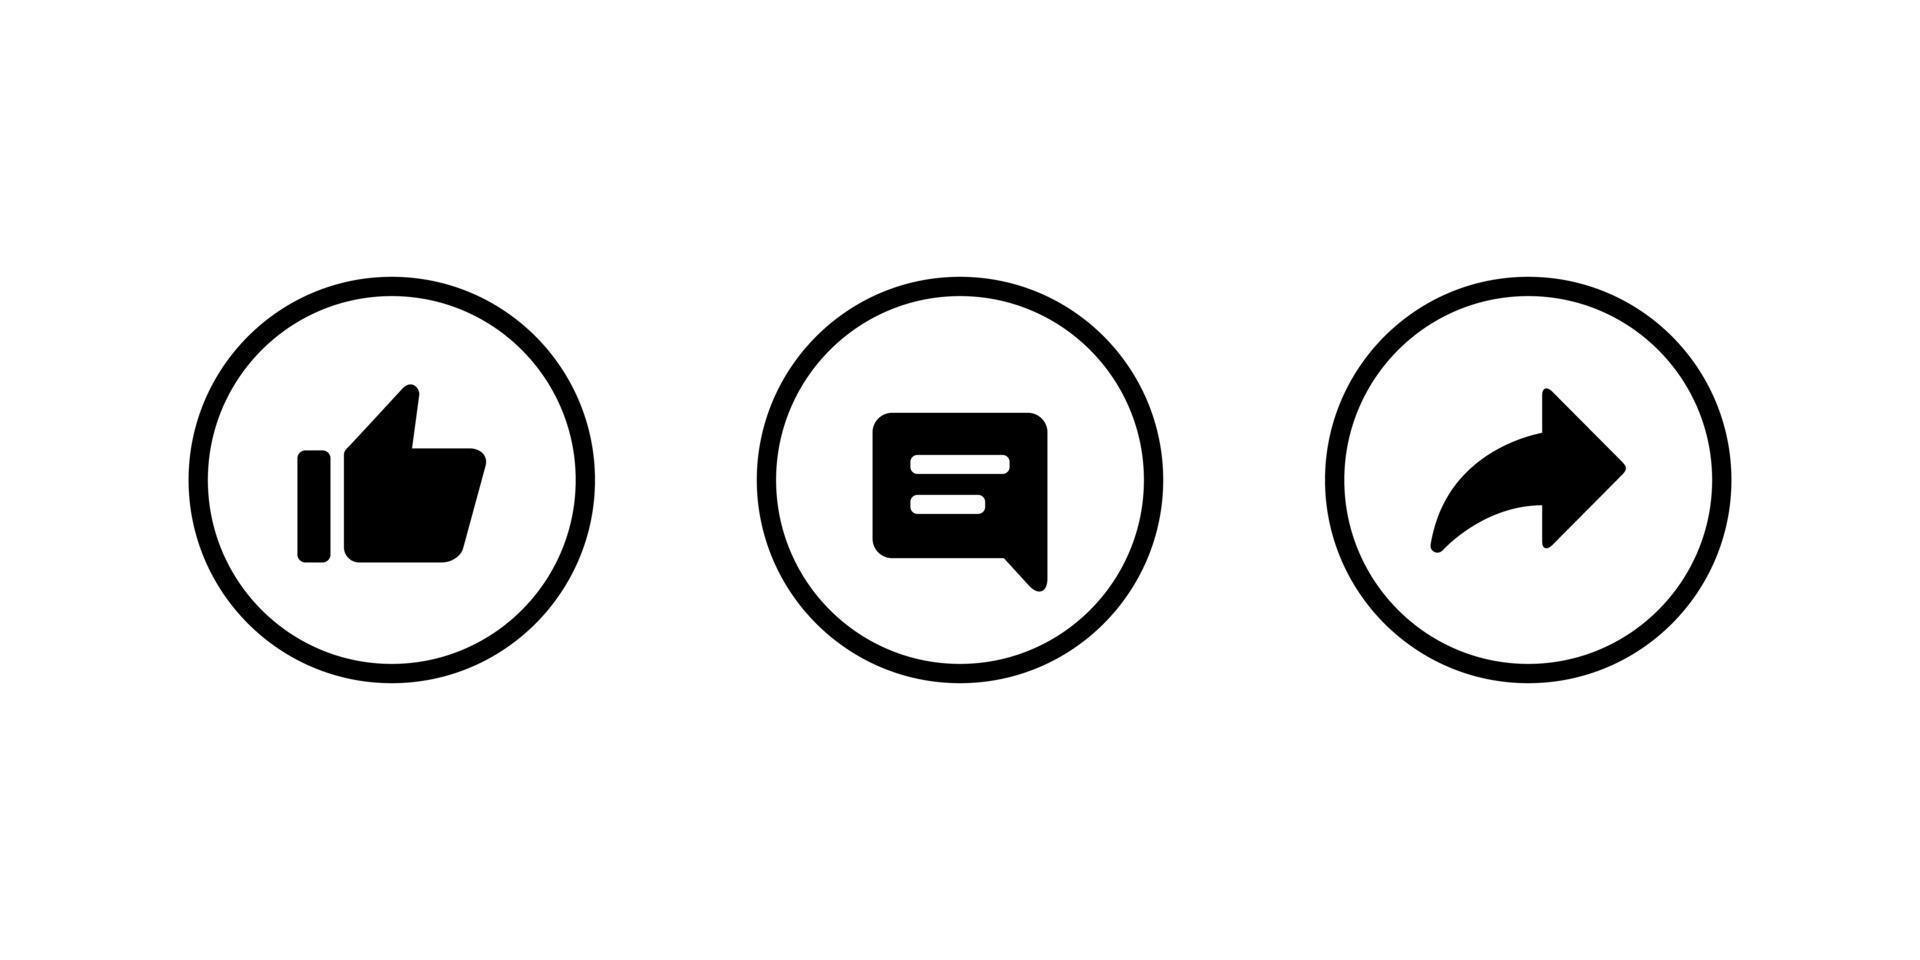 curta, comente e compartilhe vetor de ícone de botão na linha do círculo